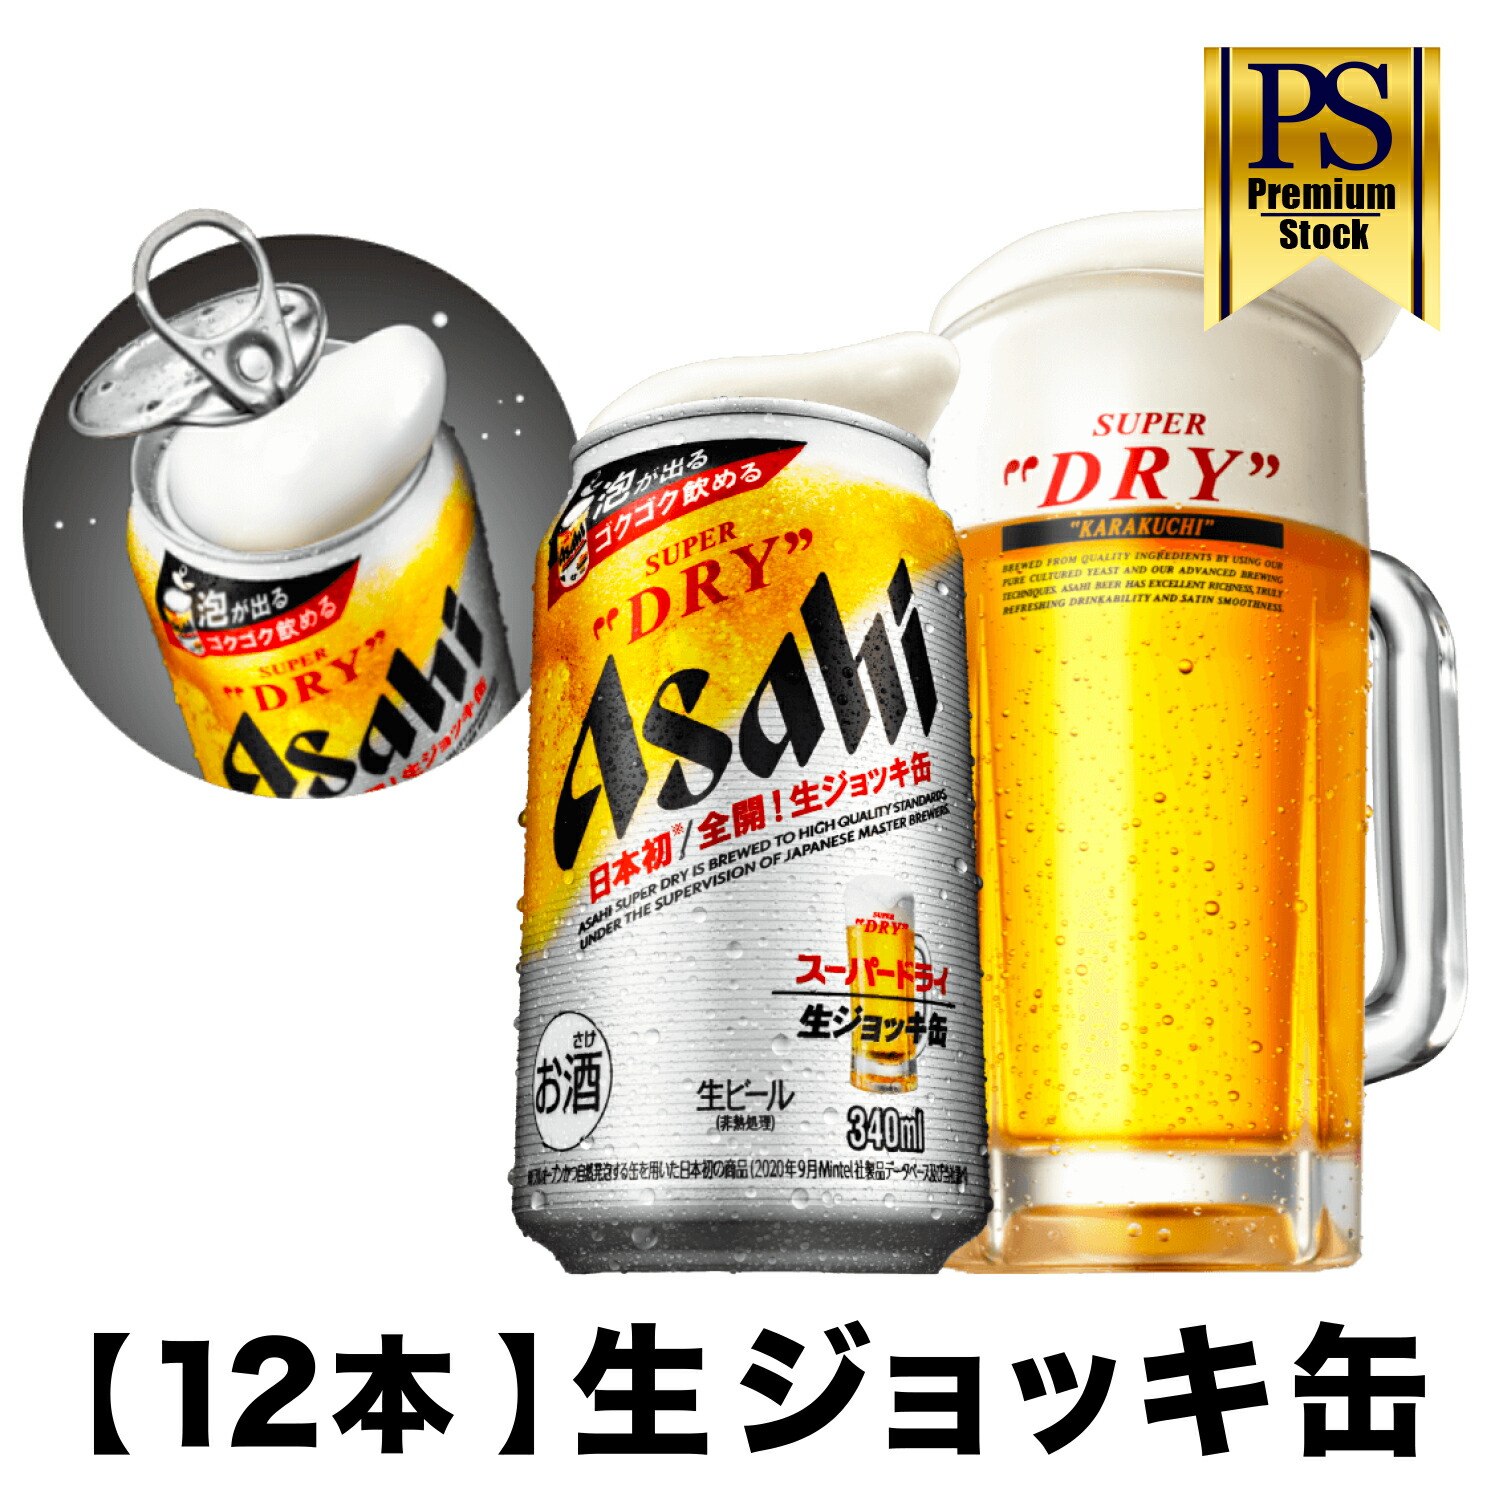 アサヒ スーパードライ 生ジョッキ缶 340ml 12缶入ビール アルコール度数5％ 缶ビール アサヒ 缶 生ジョッキ アサヒビール  スーパードライ : PremiumStock